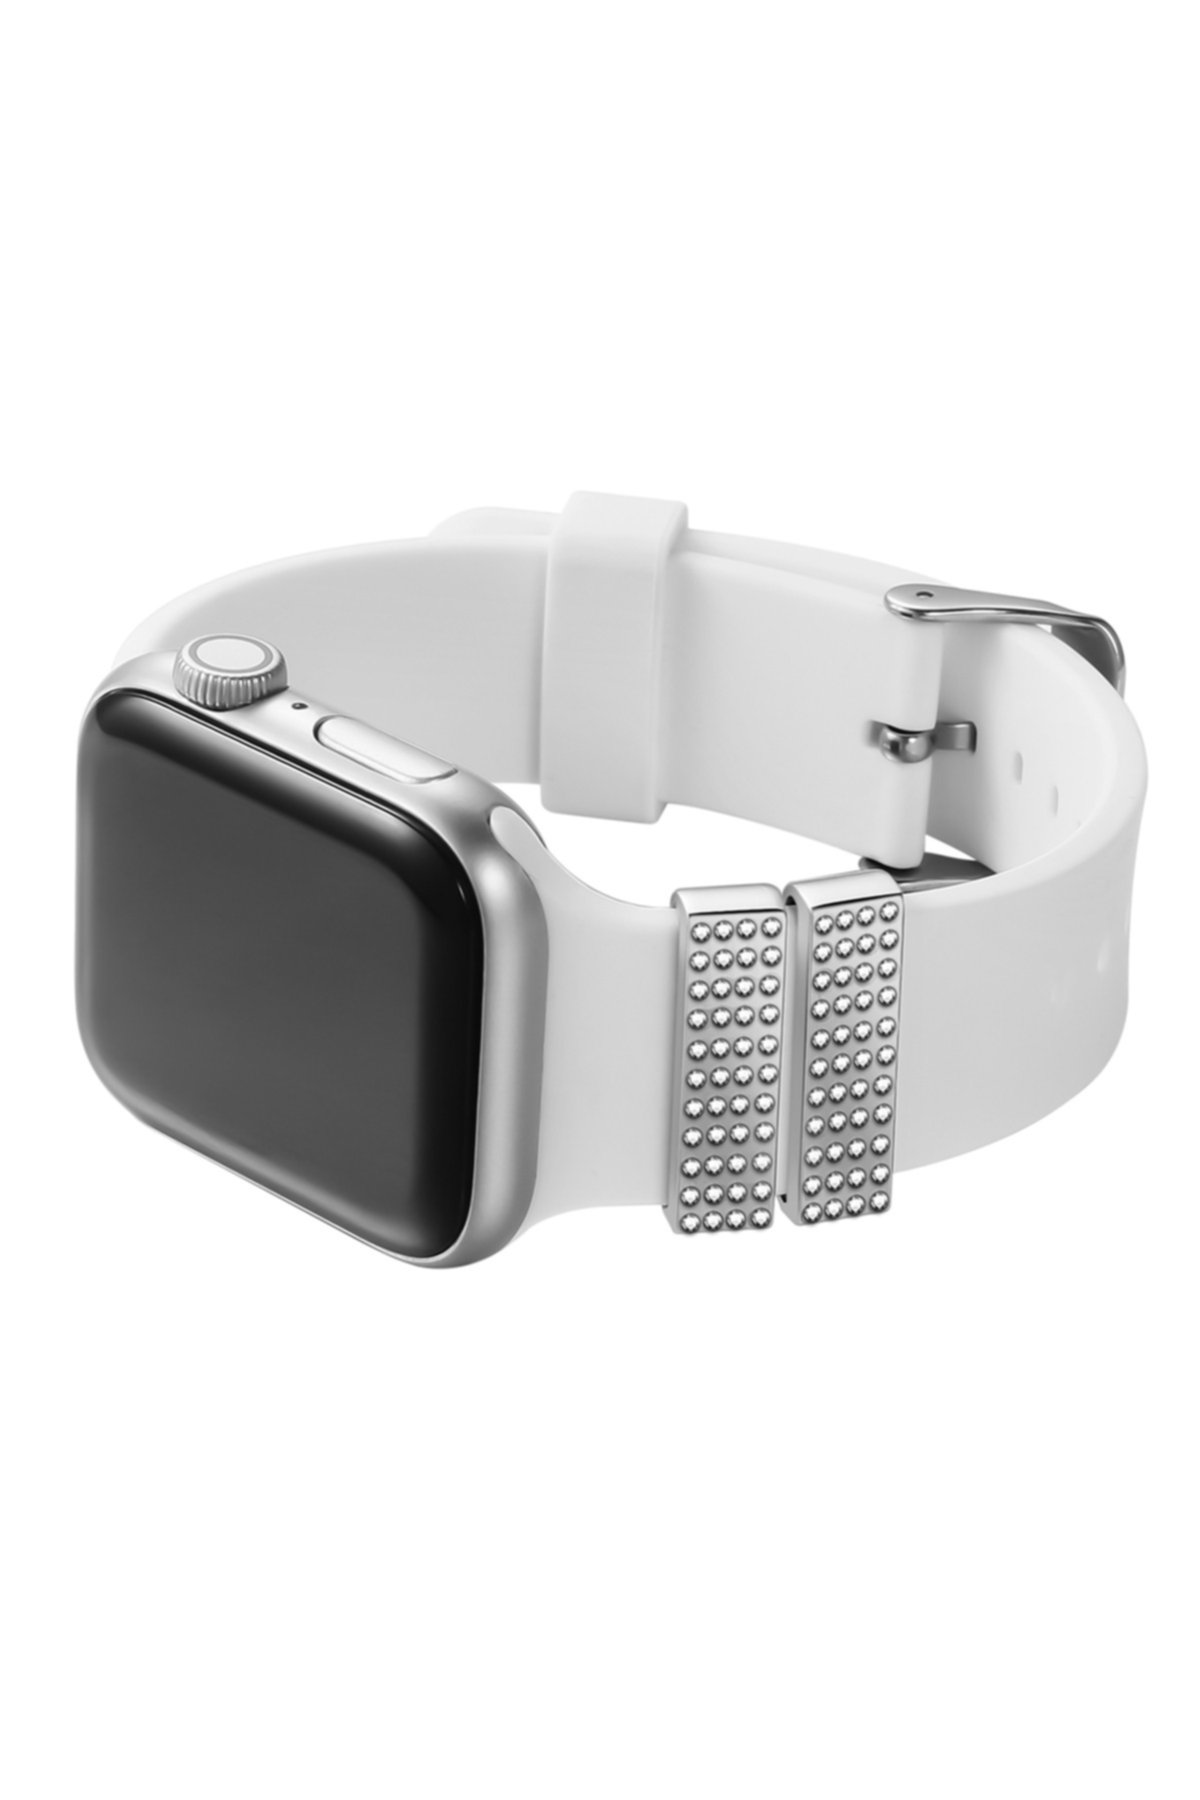 Серебряный браслет на ремешок для Apple Watch - набор из 2 шт. POSH TECH